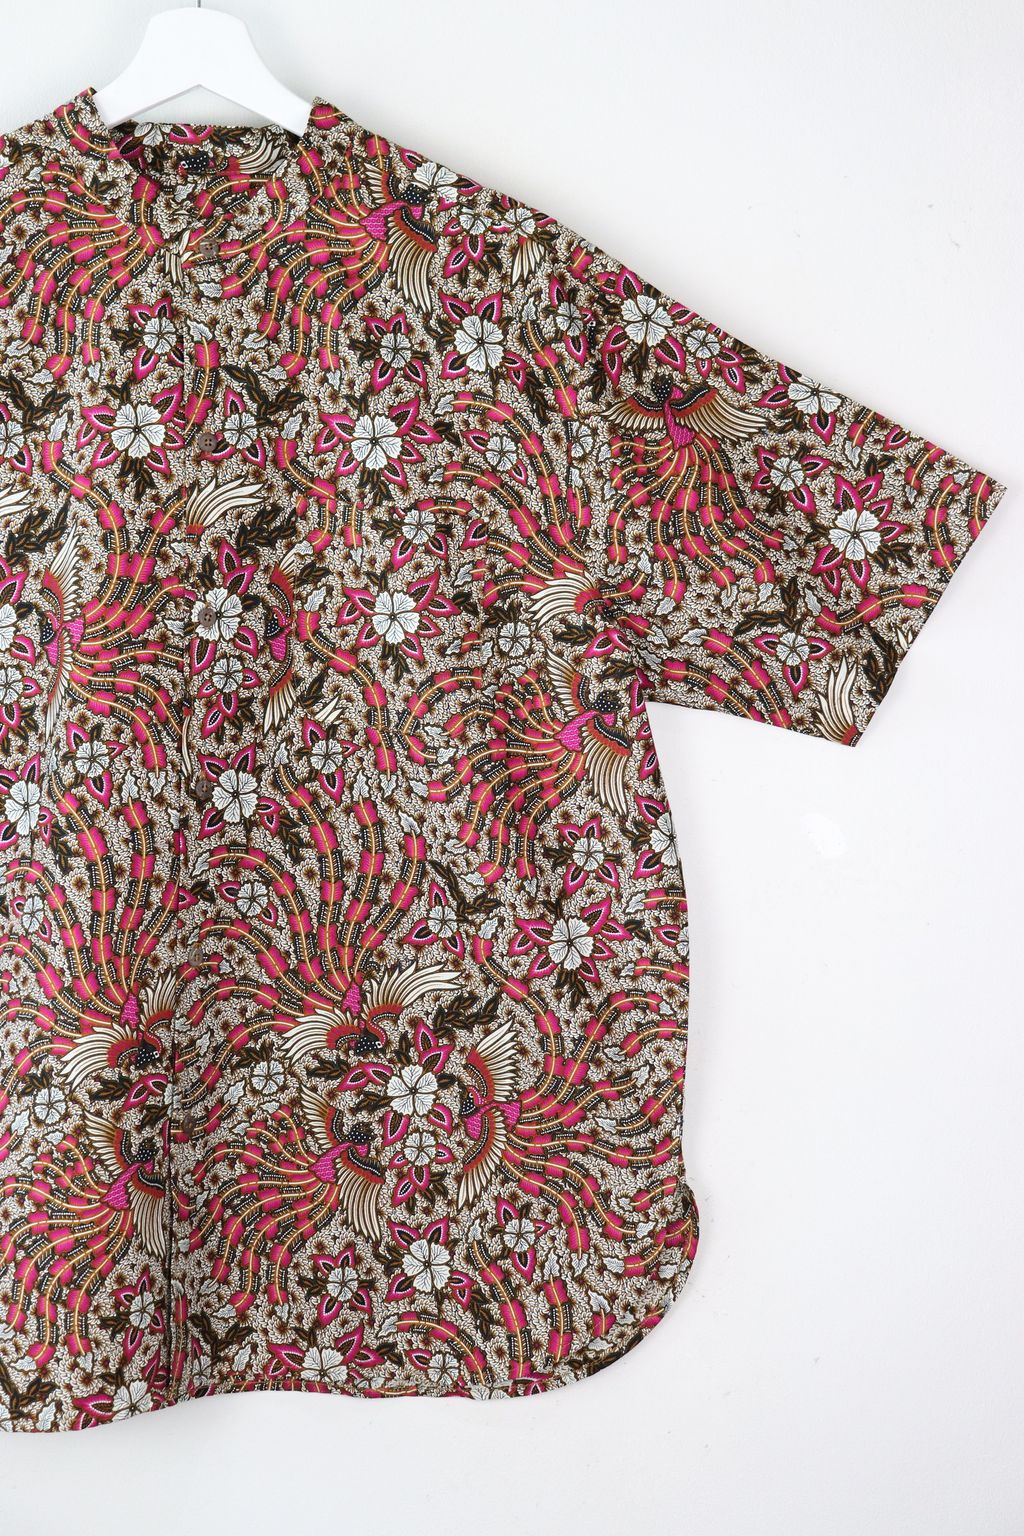 stand-collar-batik-shirt2